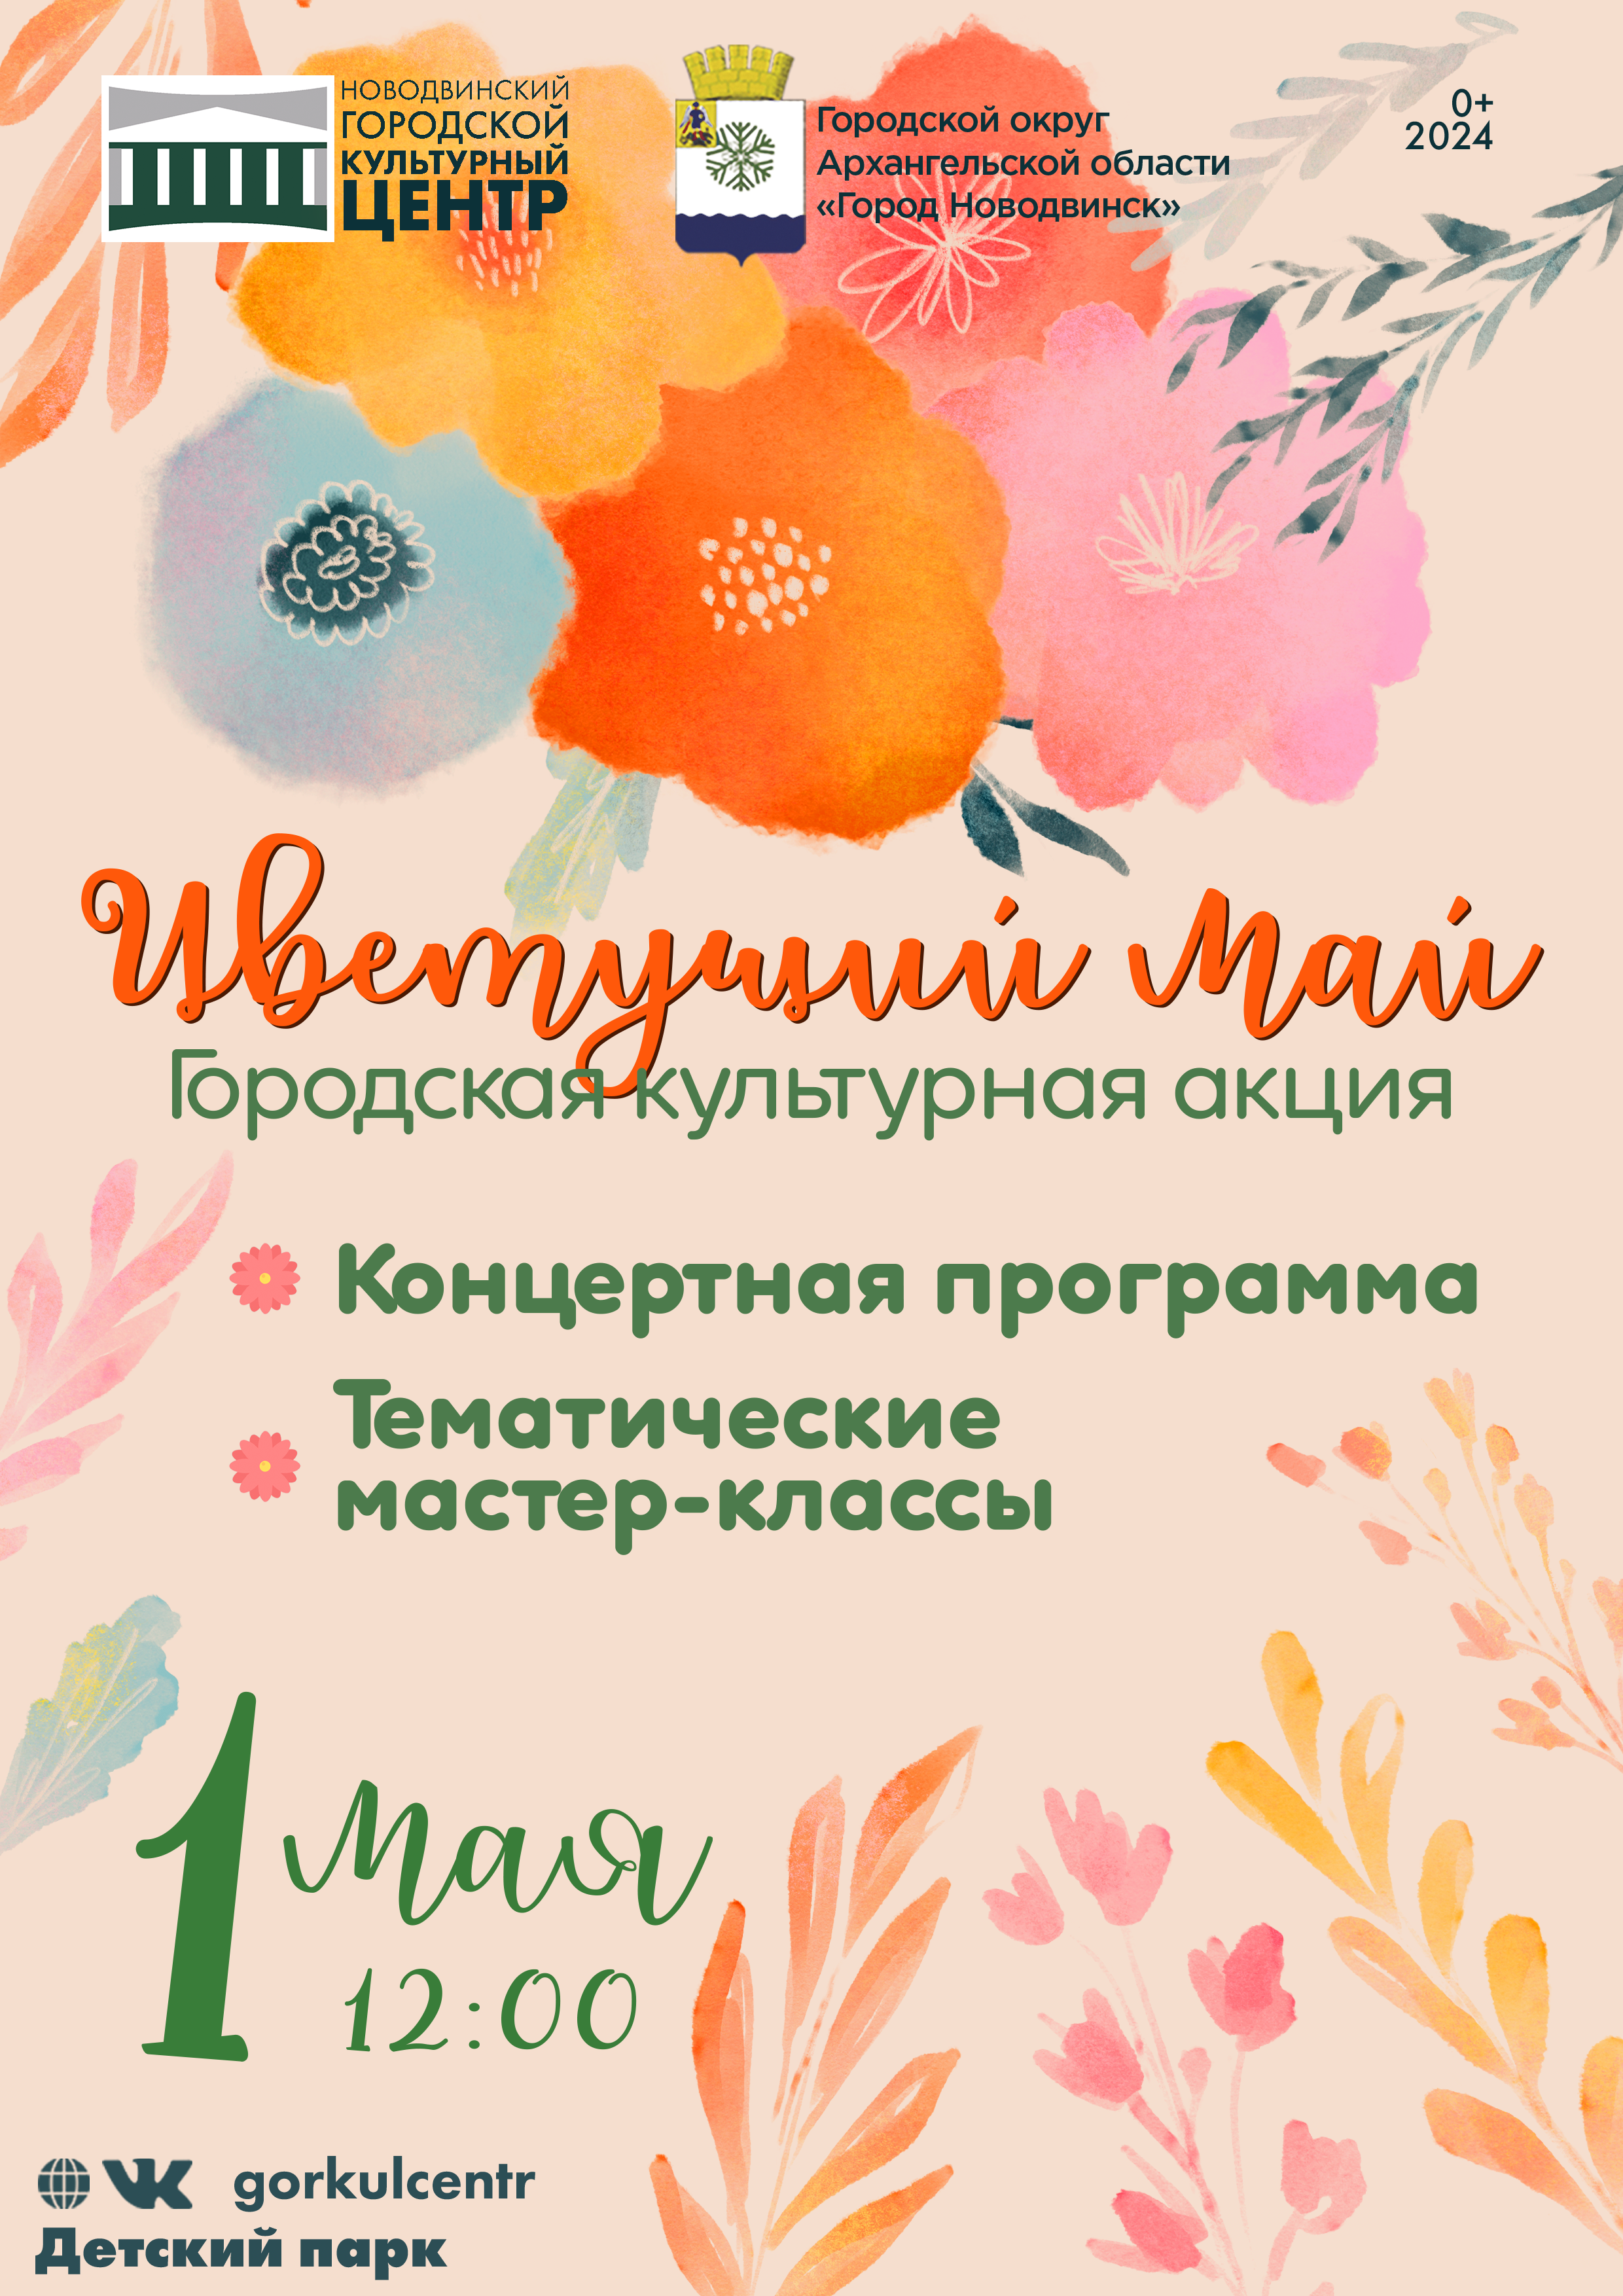 1 мая в Детском парке состоится городская культурная акция «Цветущий май»!